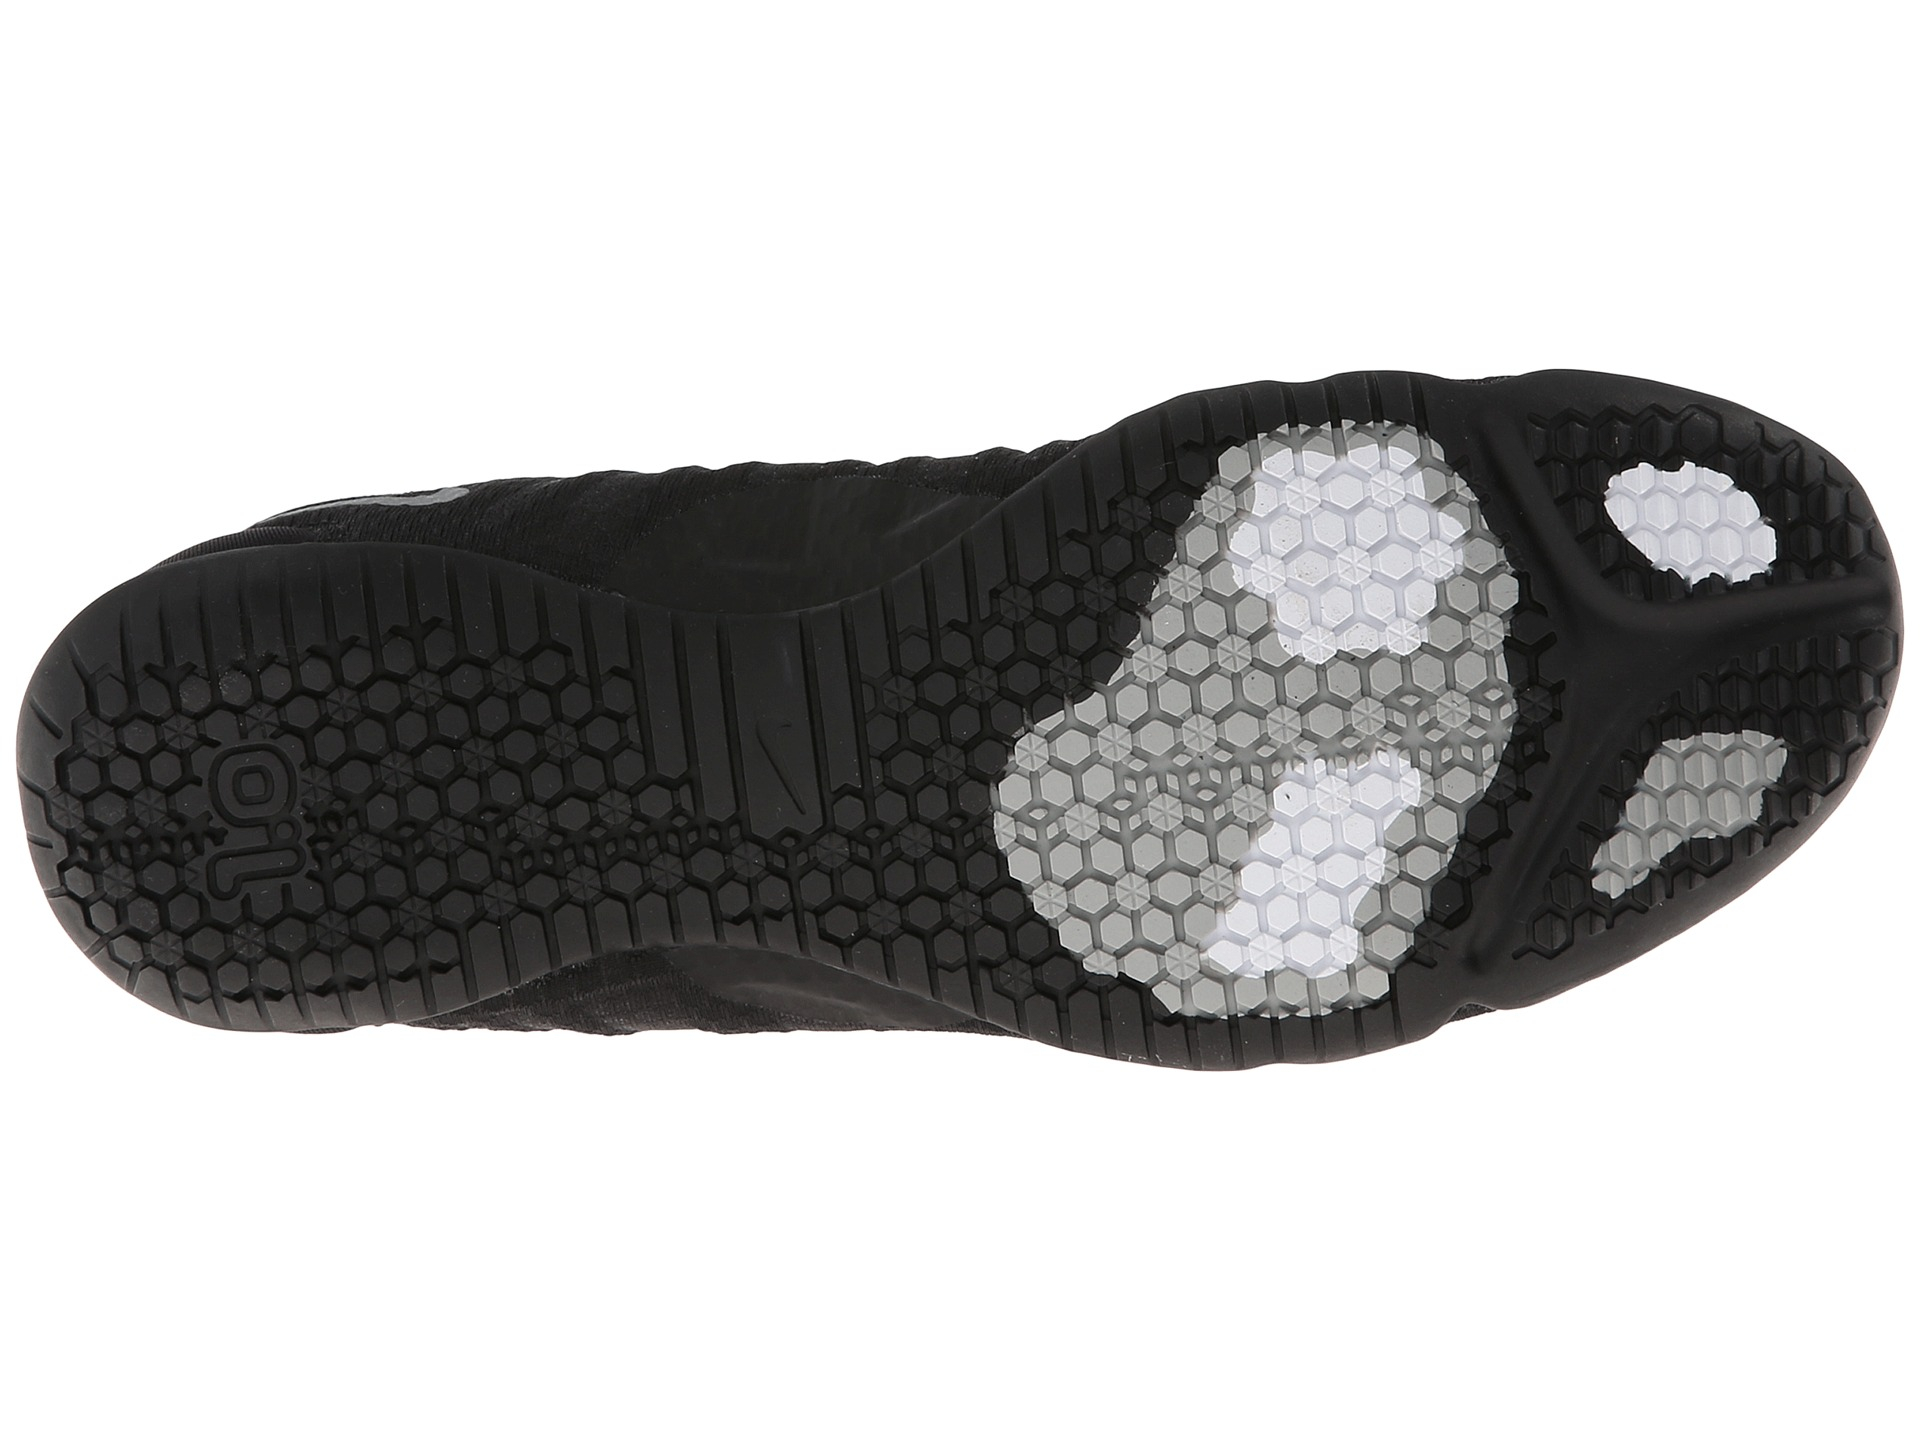 Nike Free 1.0 Cross Bionic in Black for Men - Lyst